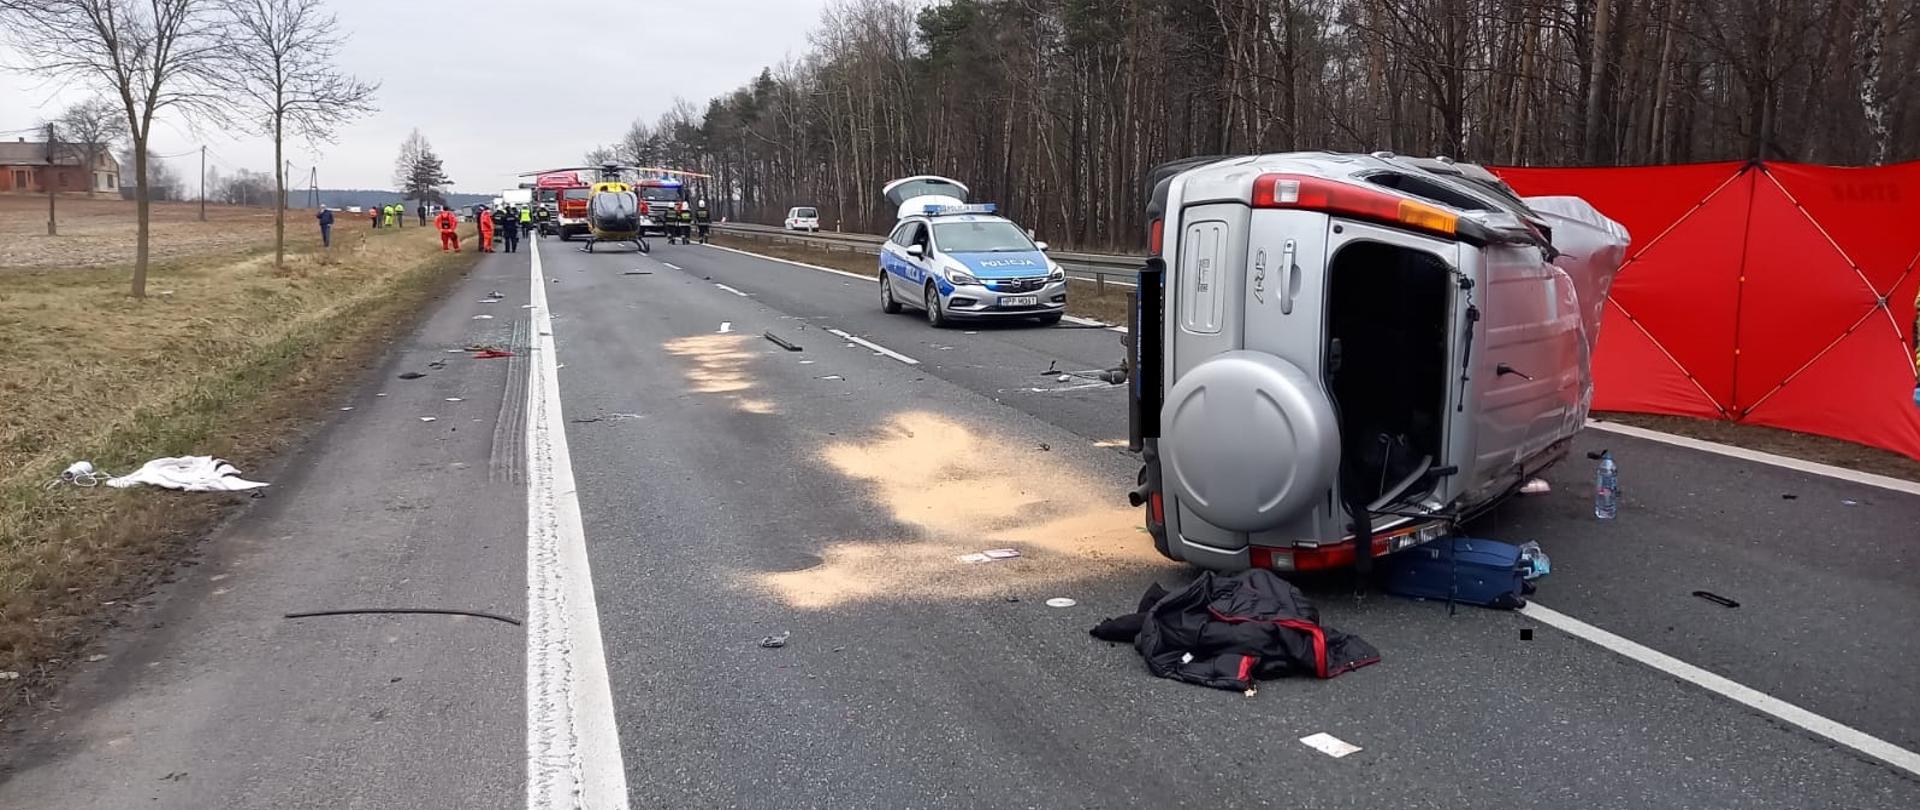 Fotografia przedstawia zniszczony samochód Honda CRV leżący na prawym boku po wypadku.
